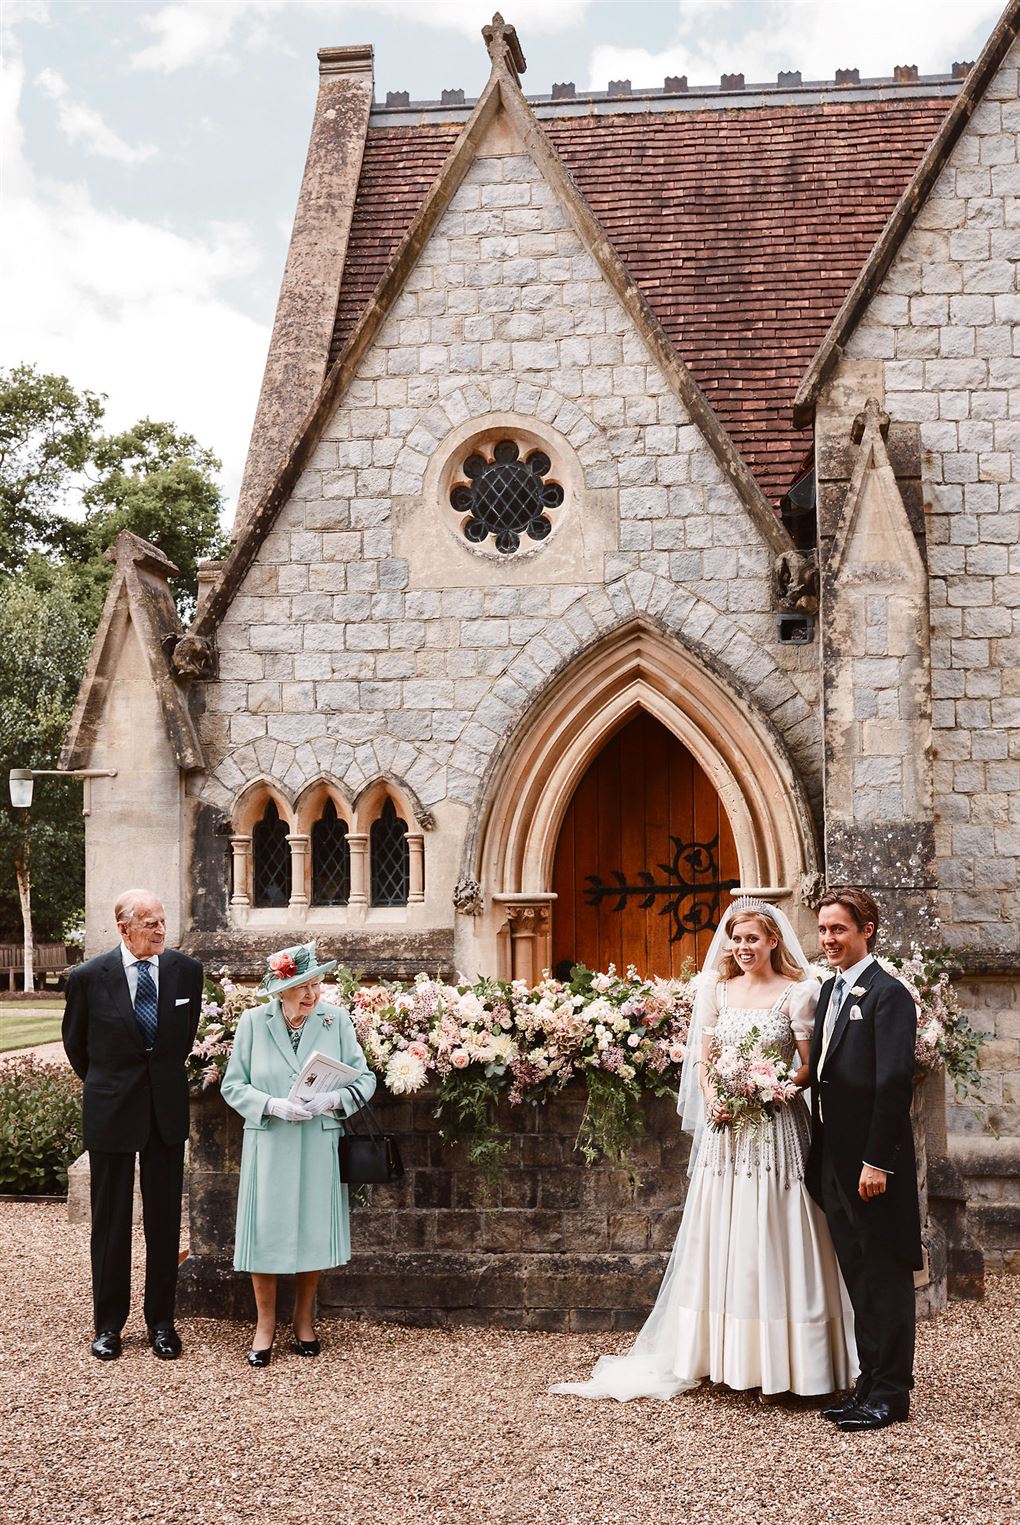 Prins Phillip og dronning Elizabeth står med blomster og kigger hen på prinsesse Beatrice i hvid brudekjole og hendes mand i jaket foran en flot kirkeport